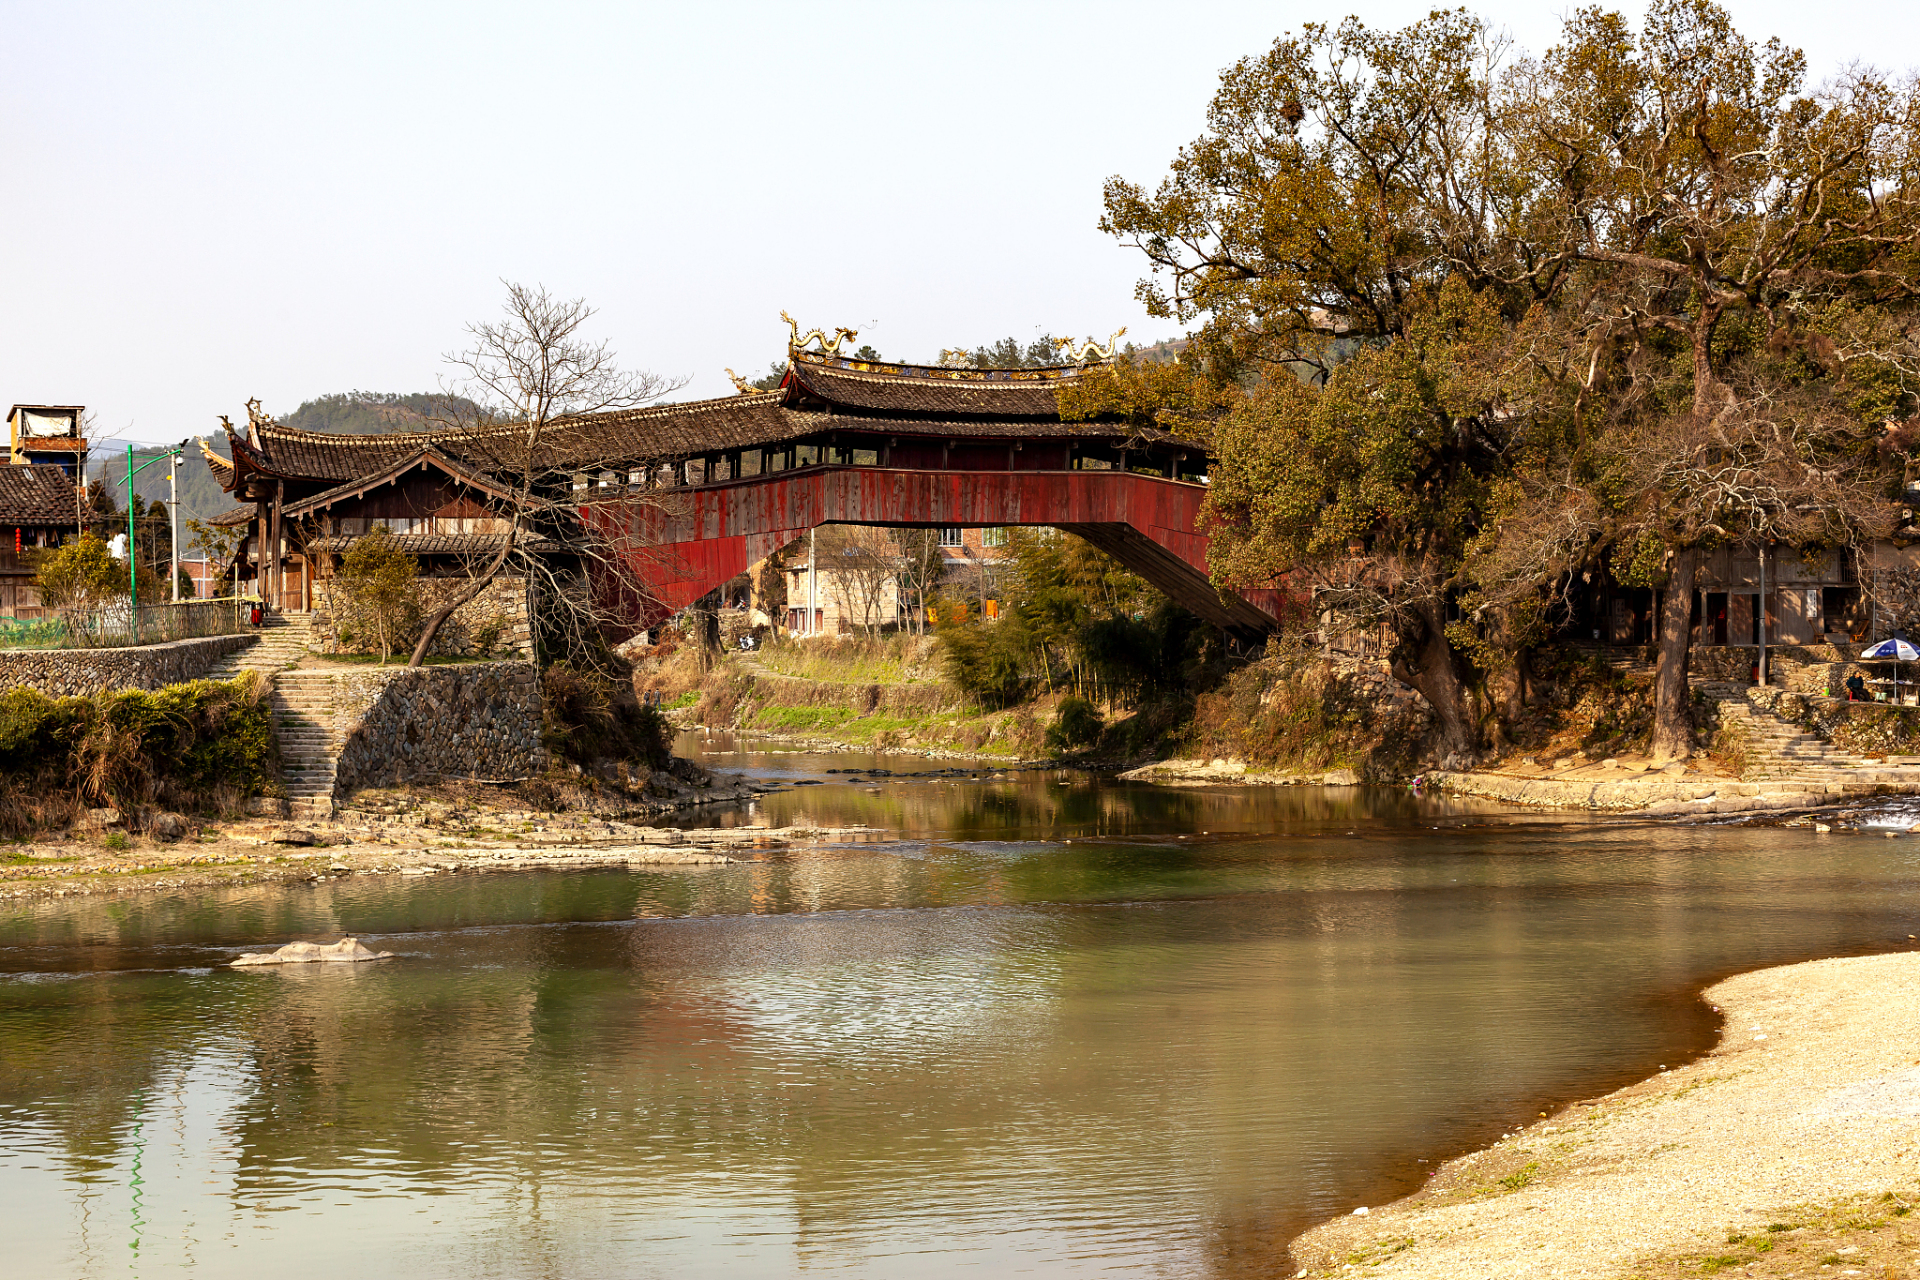 泰顺廊桥文化园,位于温州市泰顺县泗溪镇,是一处以展示古代廊桥为主要